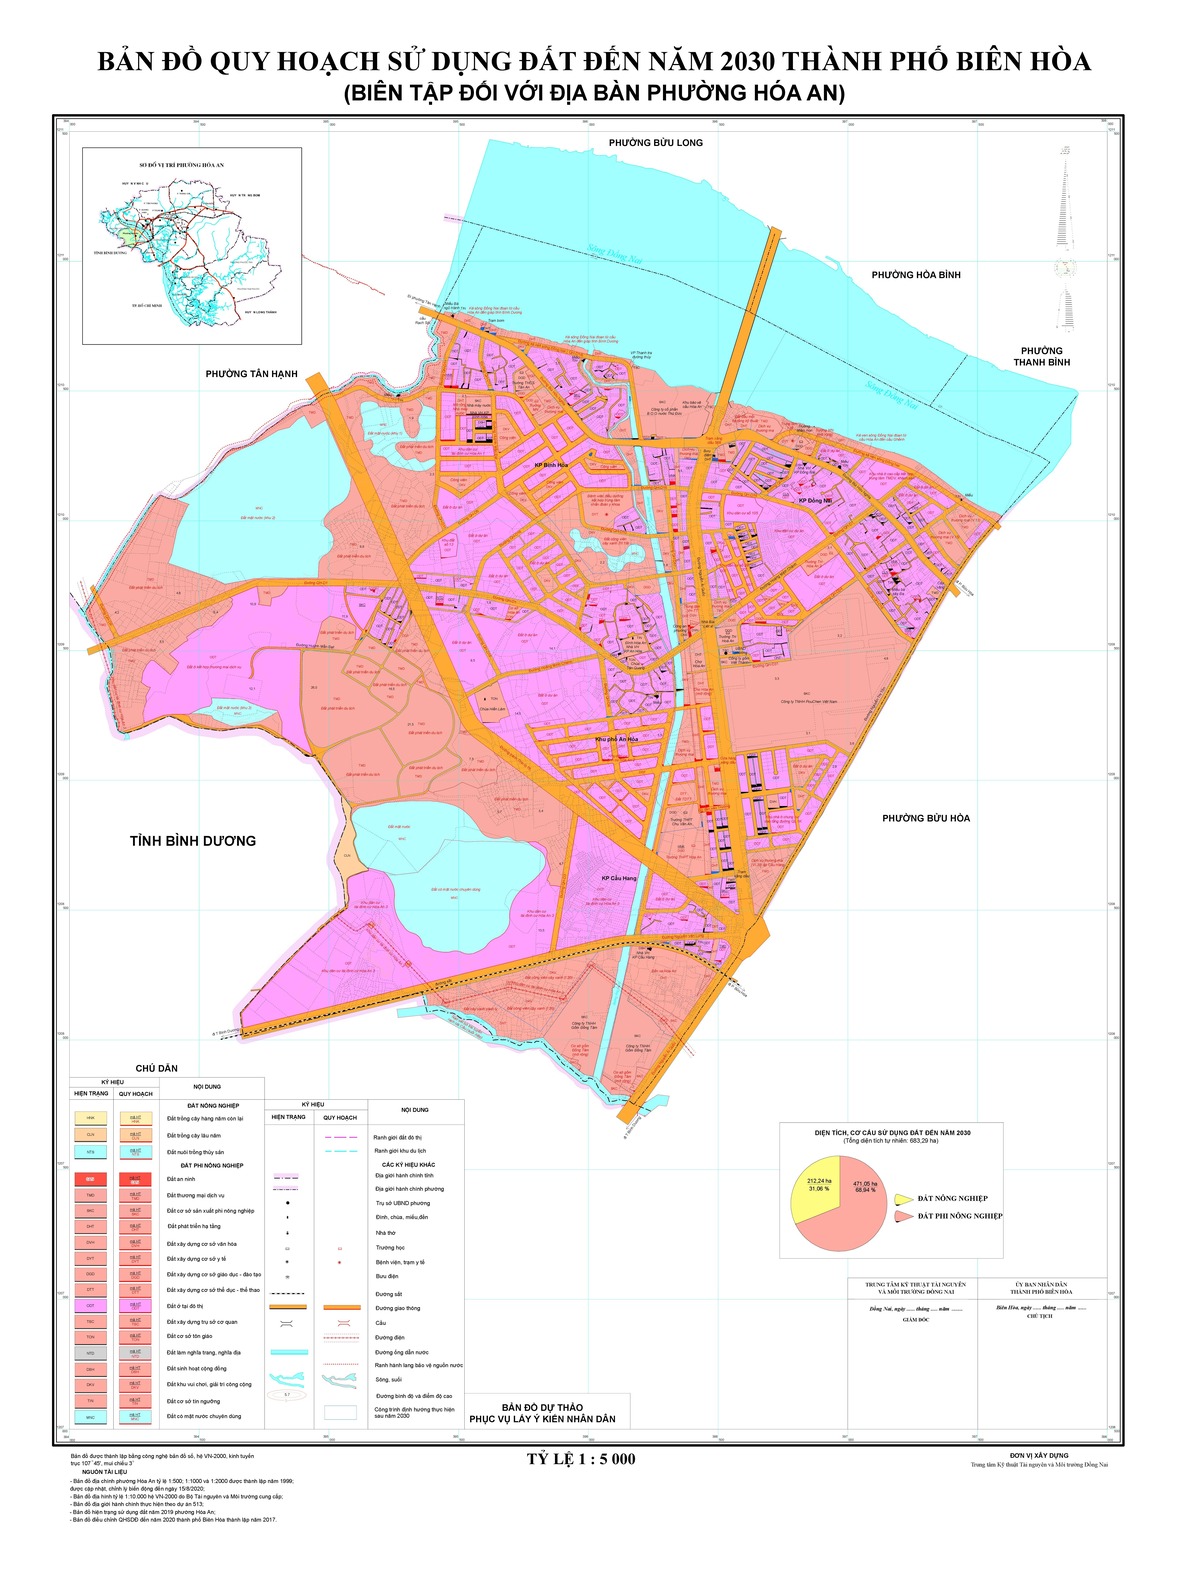 Bản đồ quy hoạch phường Hóa An, thành phố Biên Hòa, tỉnh Đồng Nai đến năm 2030